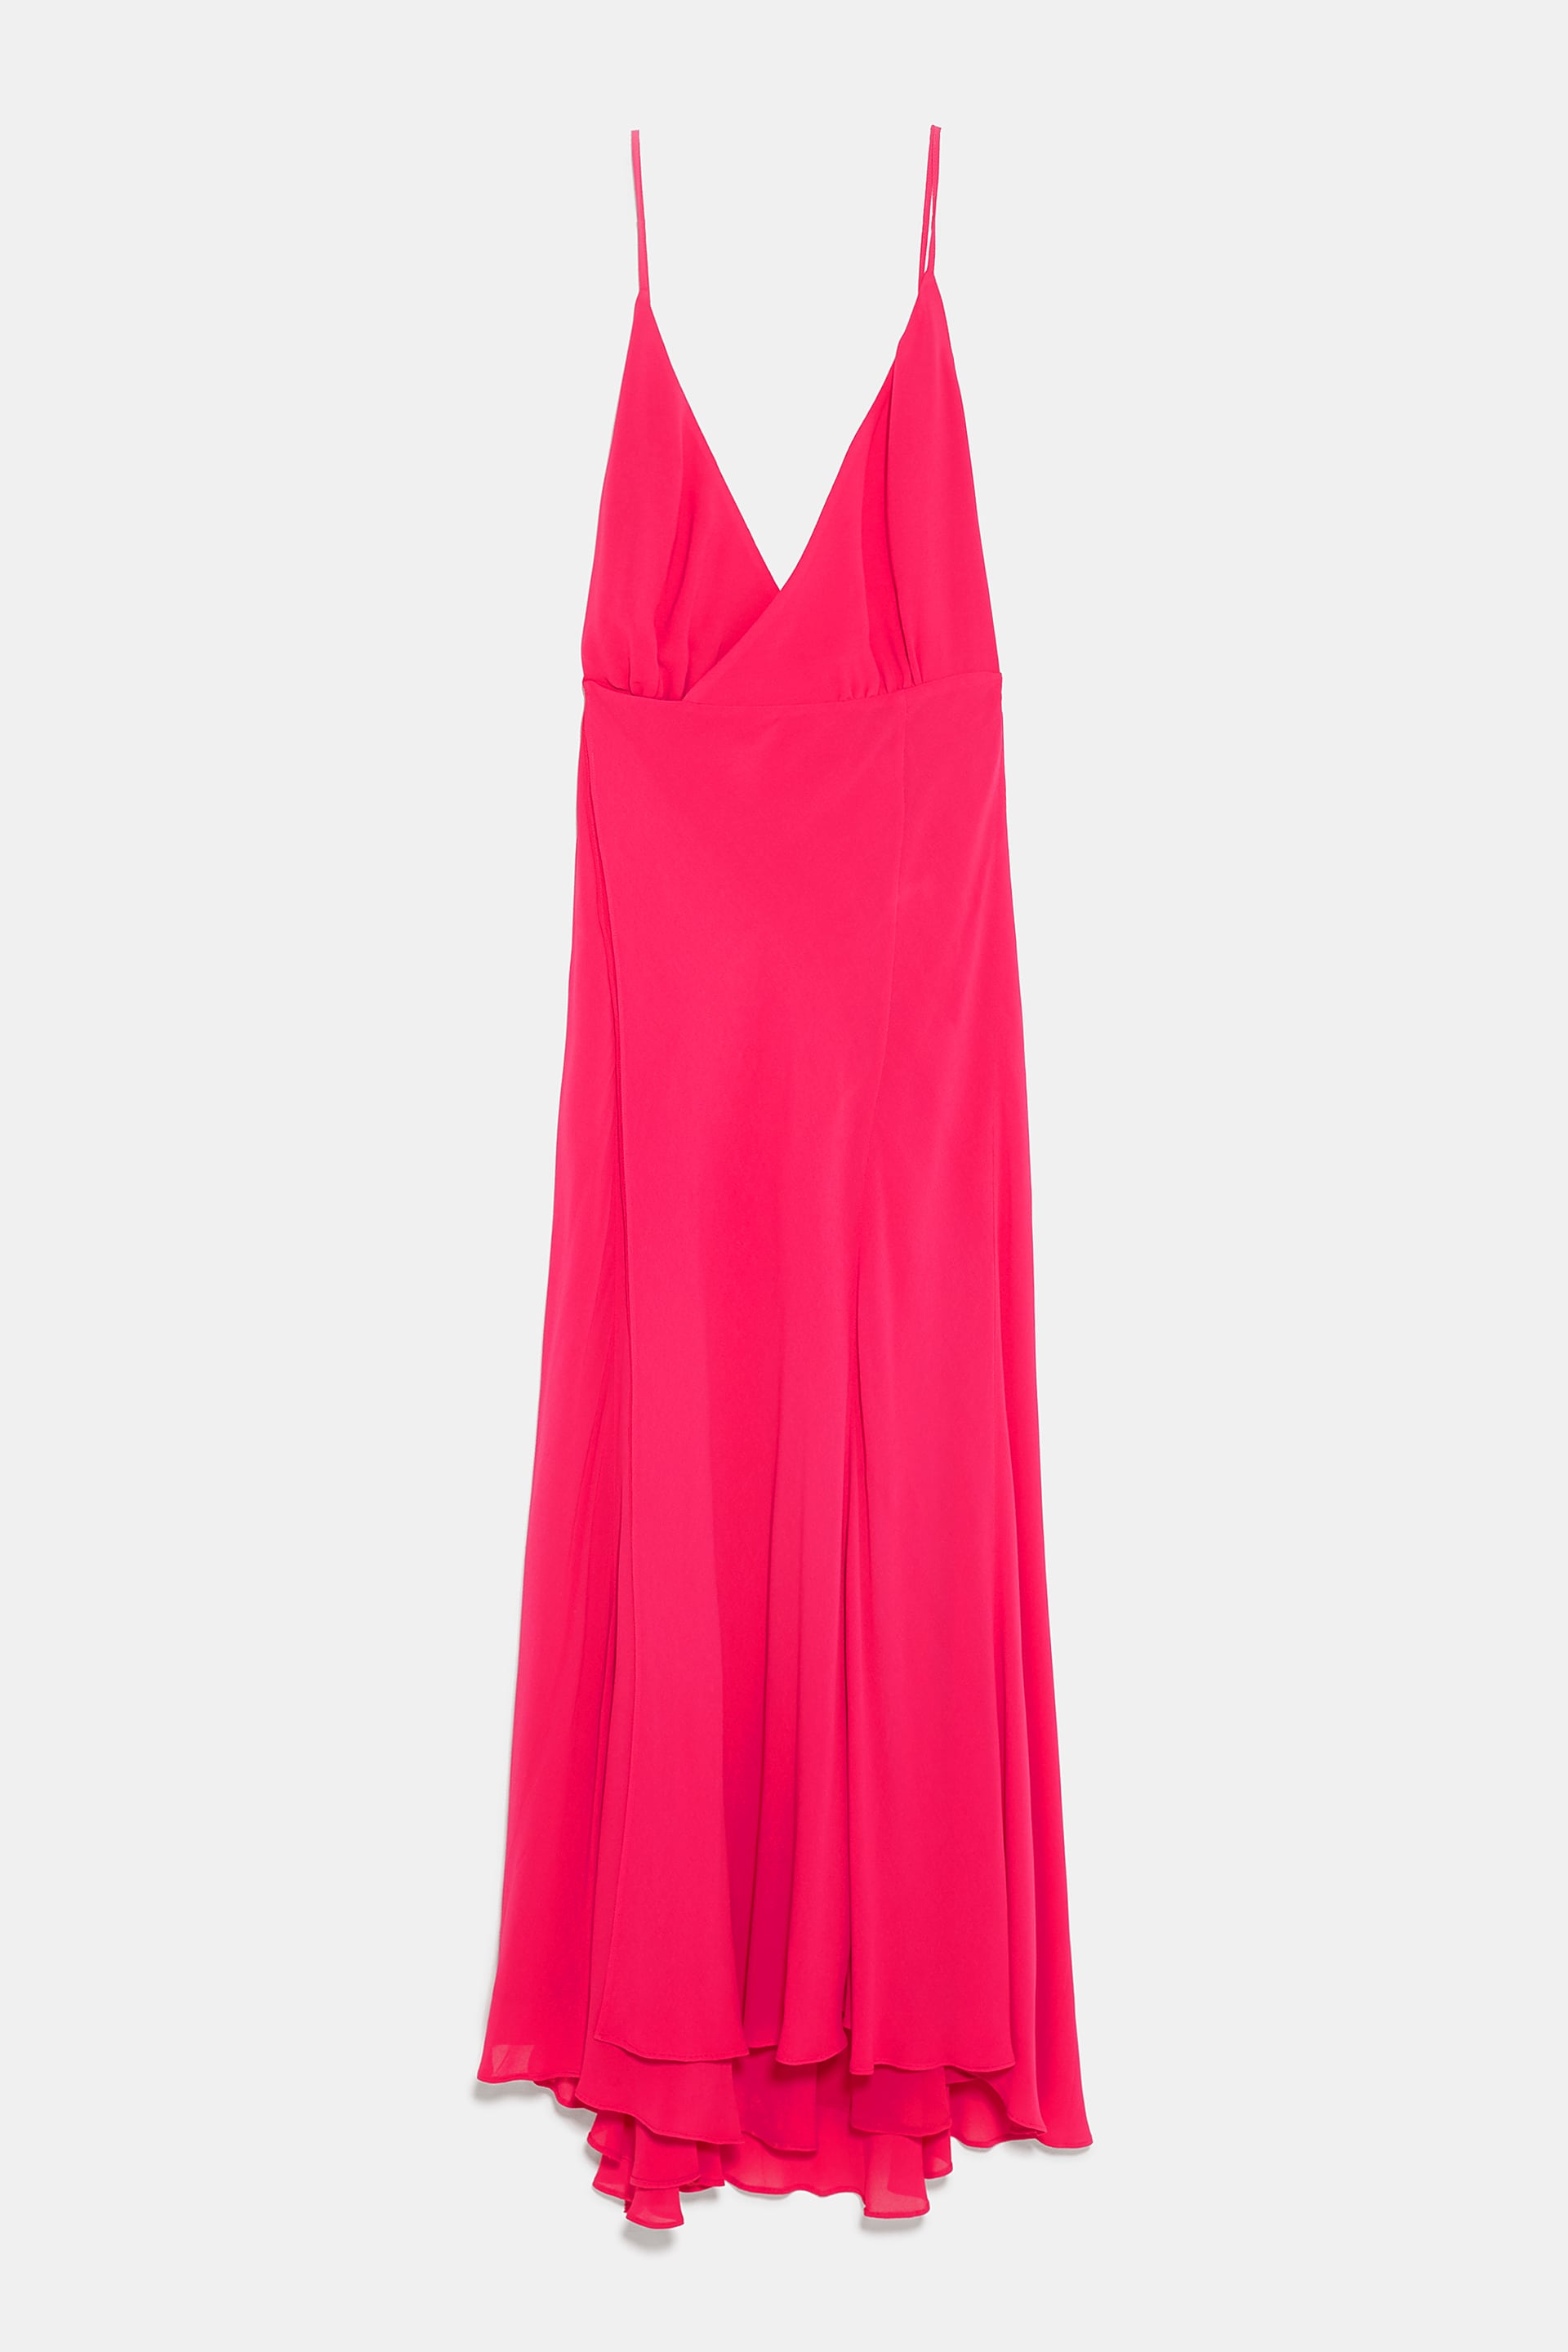 Vestido, Zara, €89,95